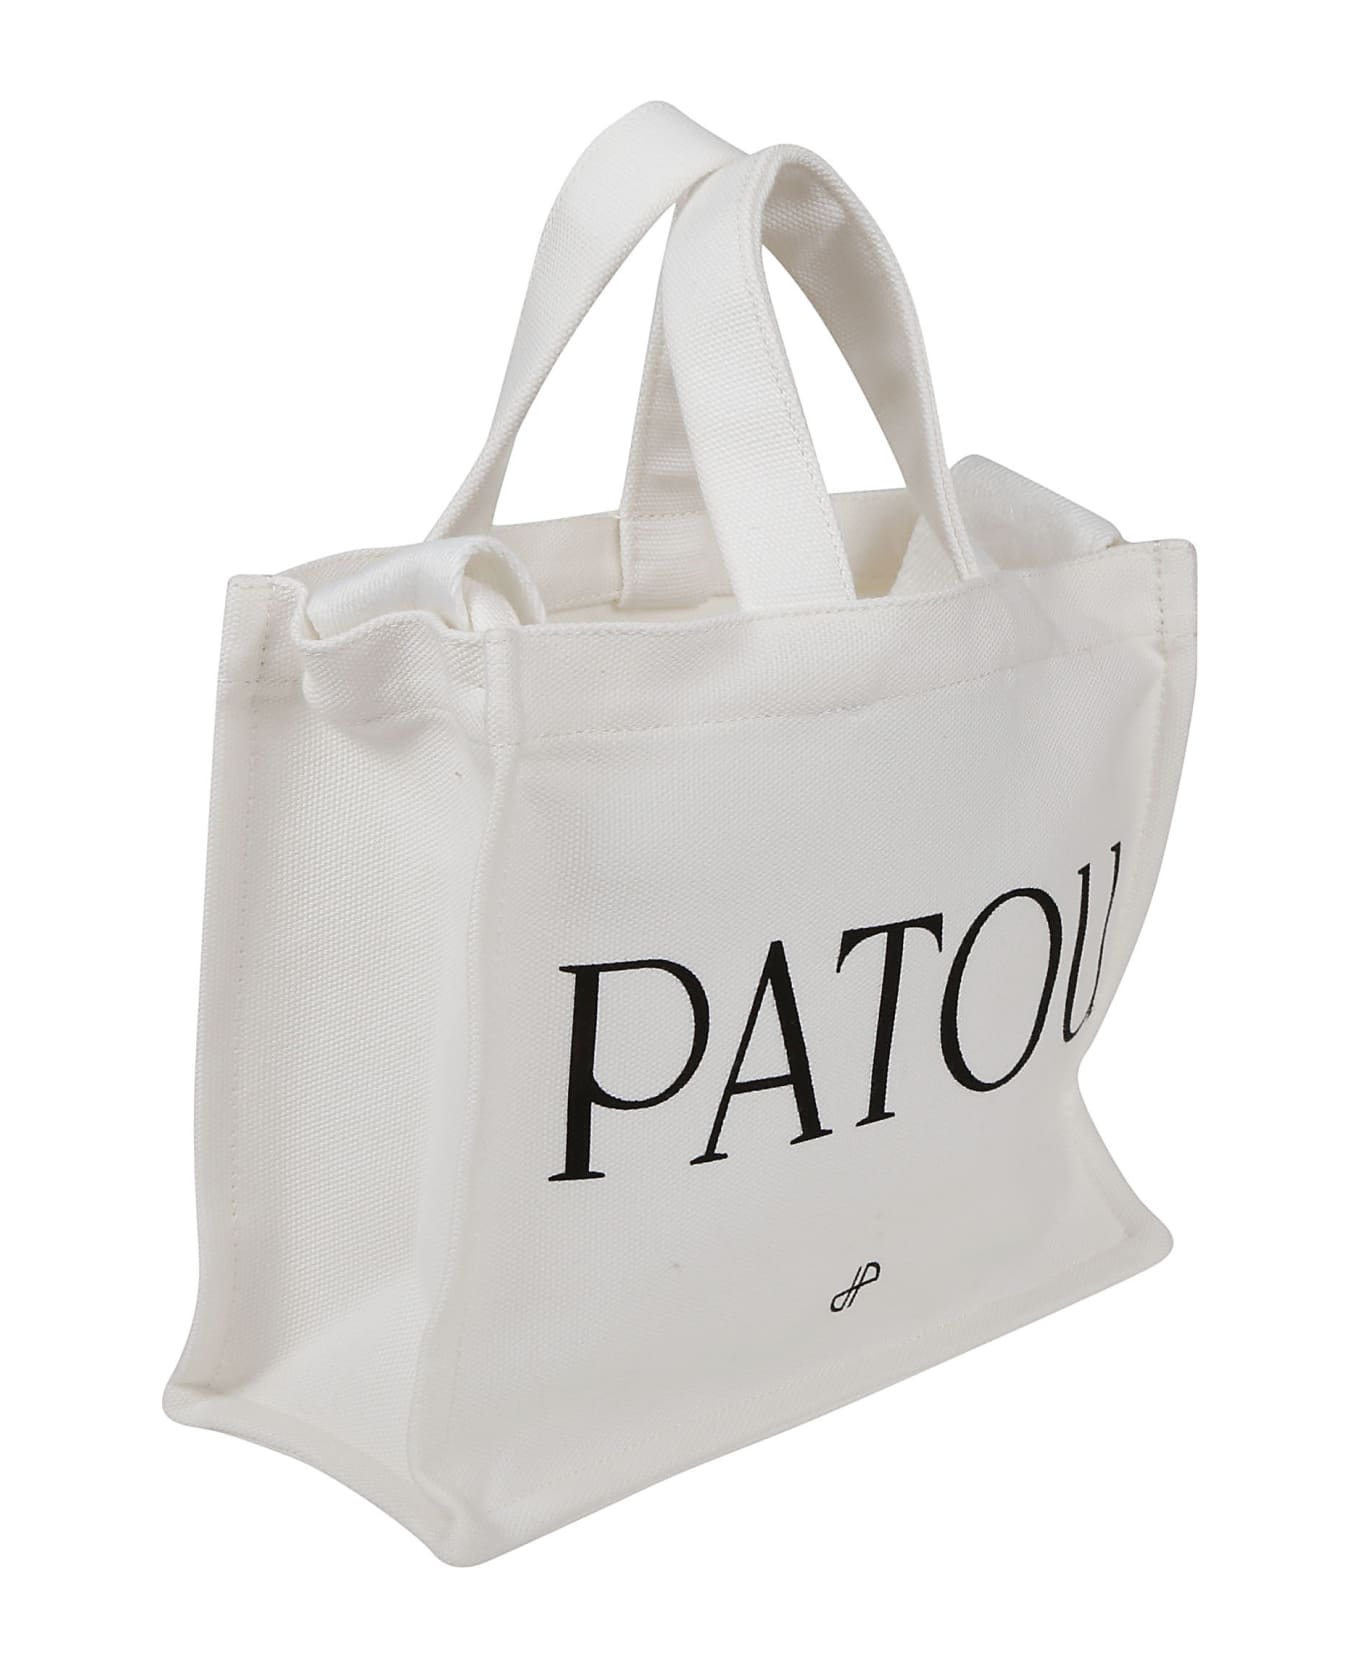 Patou Small Tote Bag - Cream